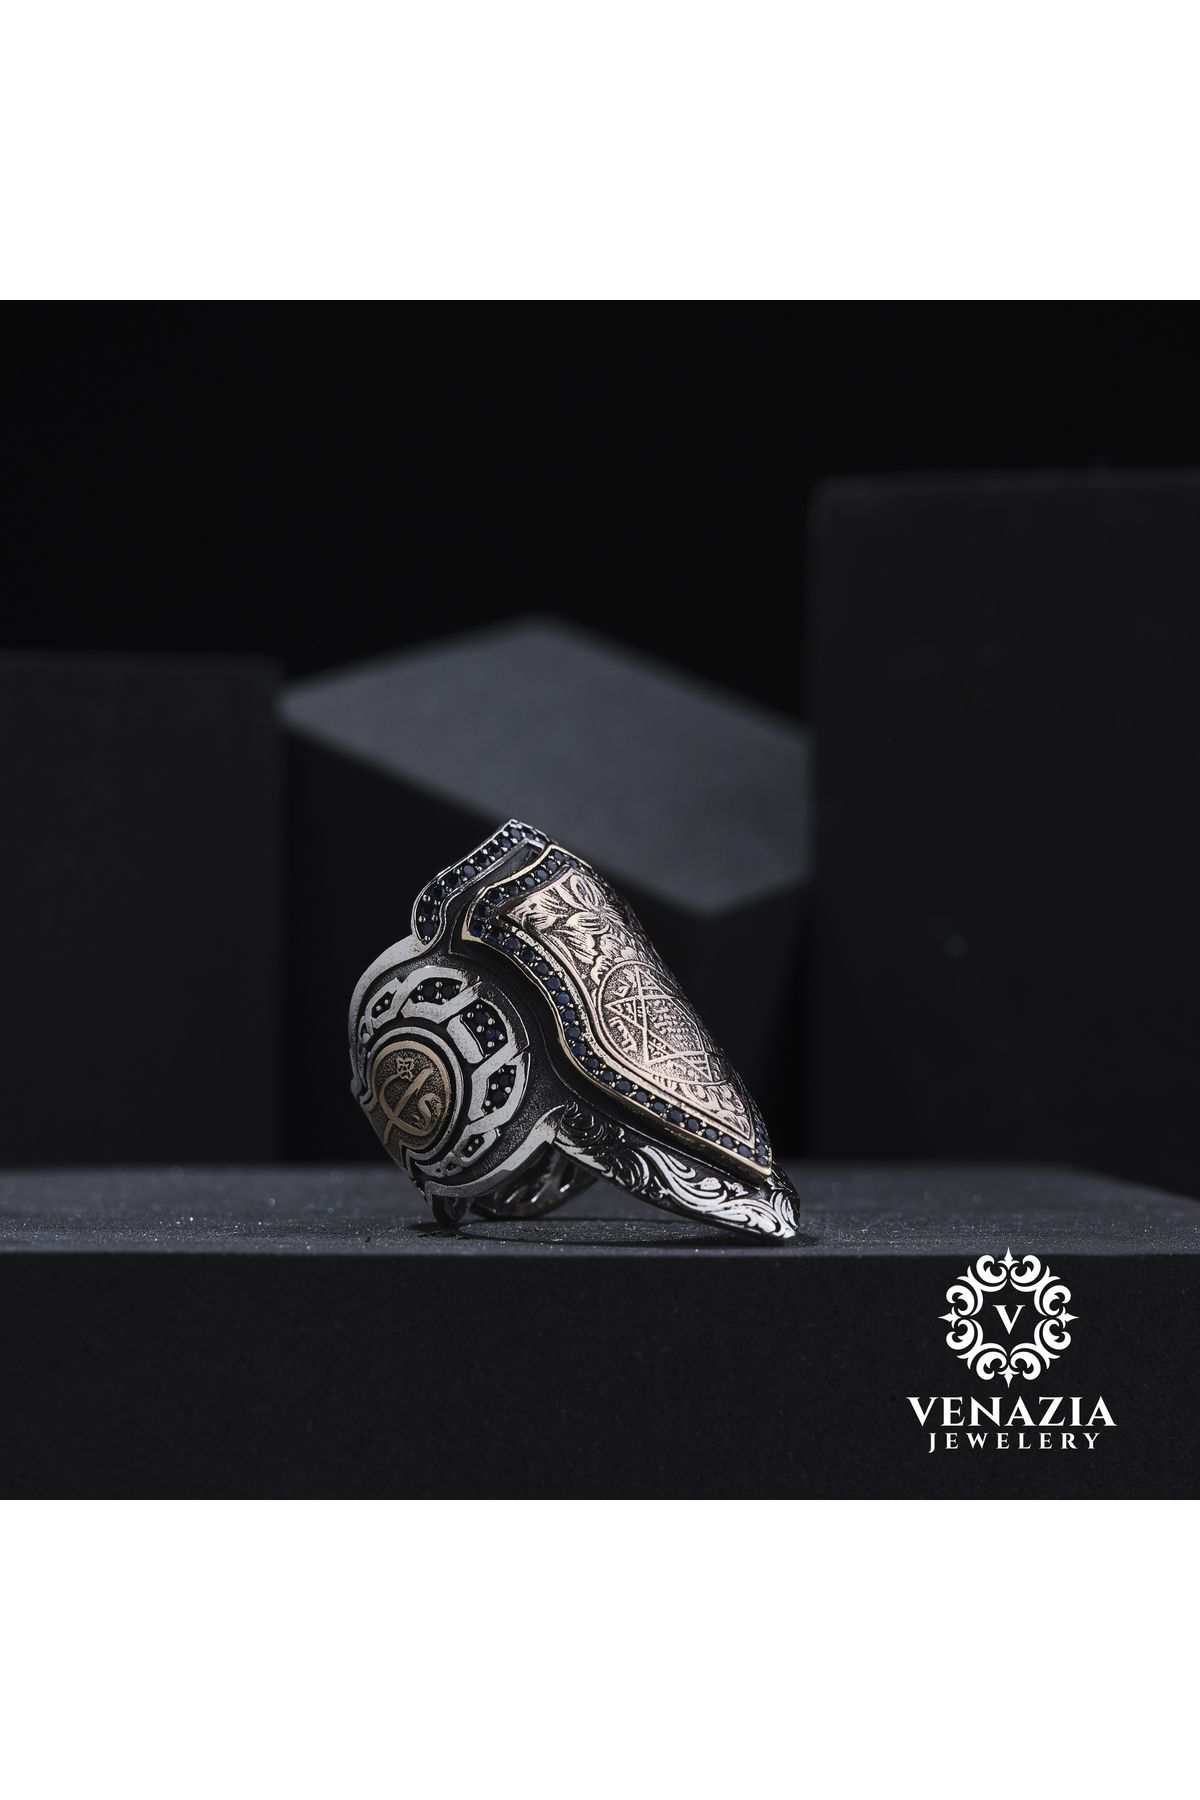 Venazia Jewelery Zihgir Hz. Süleyman Mührü Gümüş Erkek Yüzük Modeli